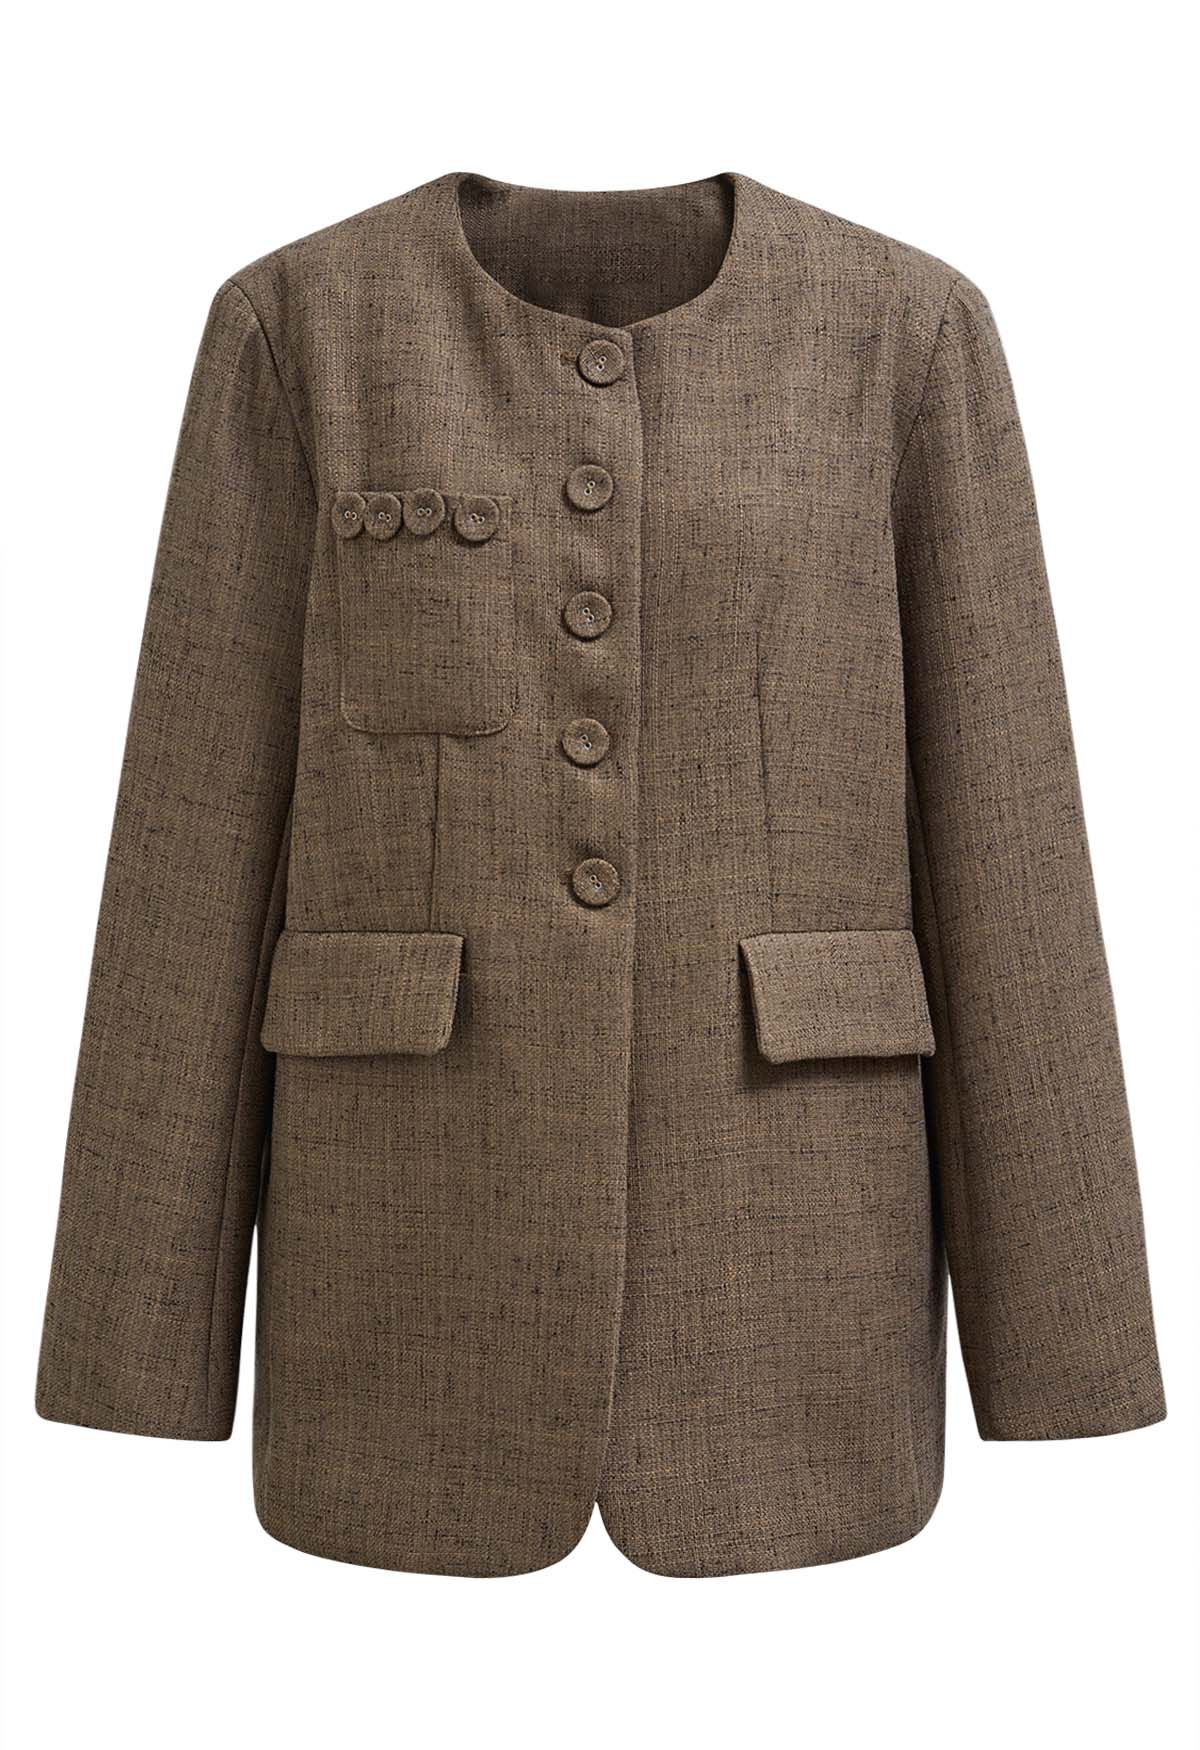 Brauner Tweed-Blazer mit Rundhalsausschnitt und Knöpfen